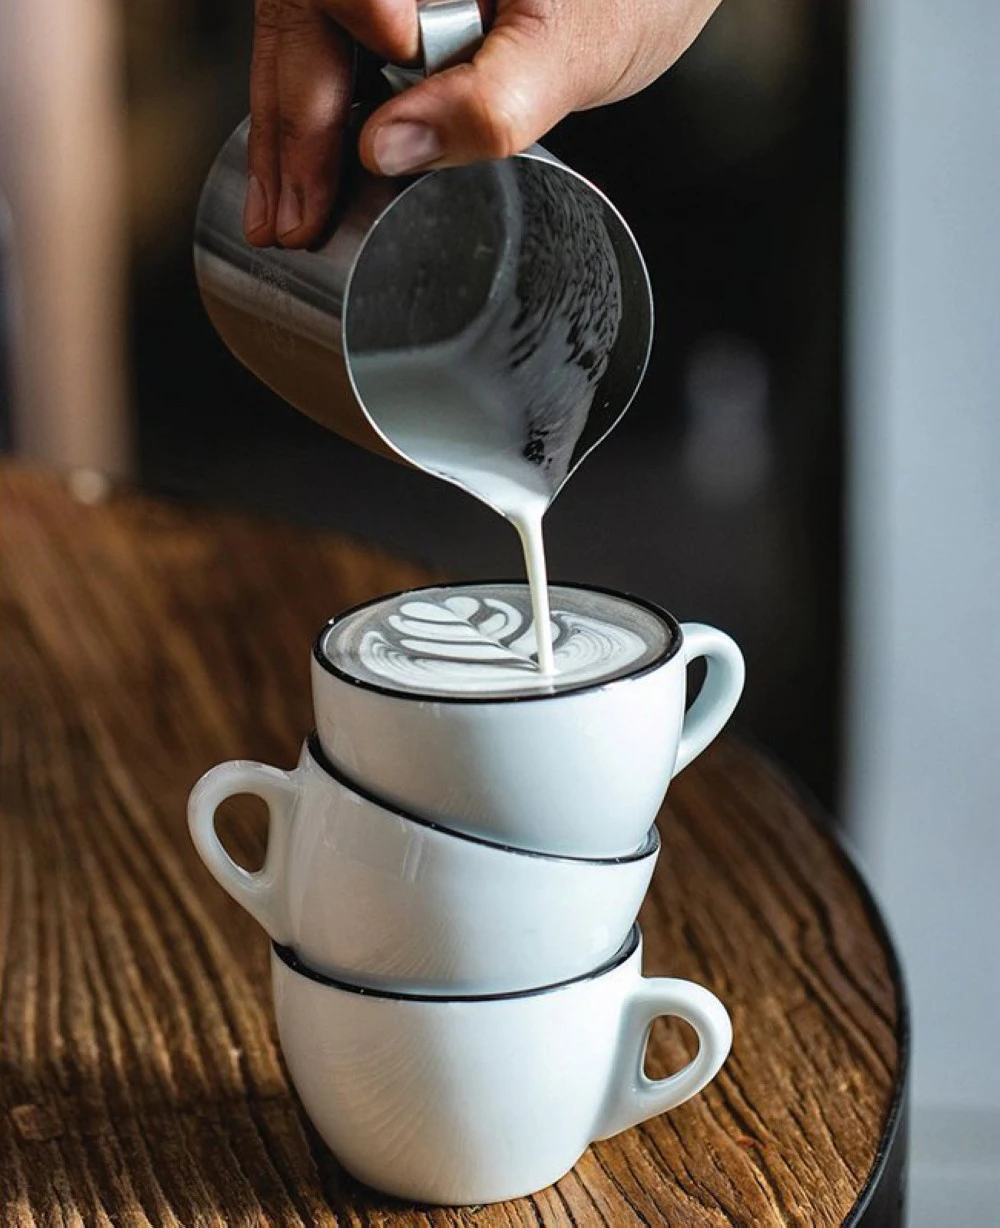 6 أنواع لاتيه مصنوعة من مكوّنات صحية، يمكنكِ اختيارها بدل القهوة!